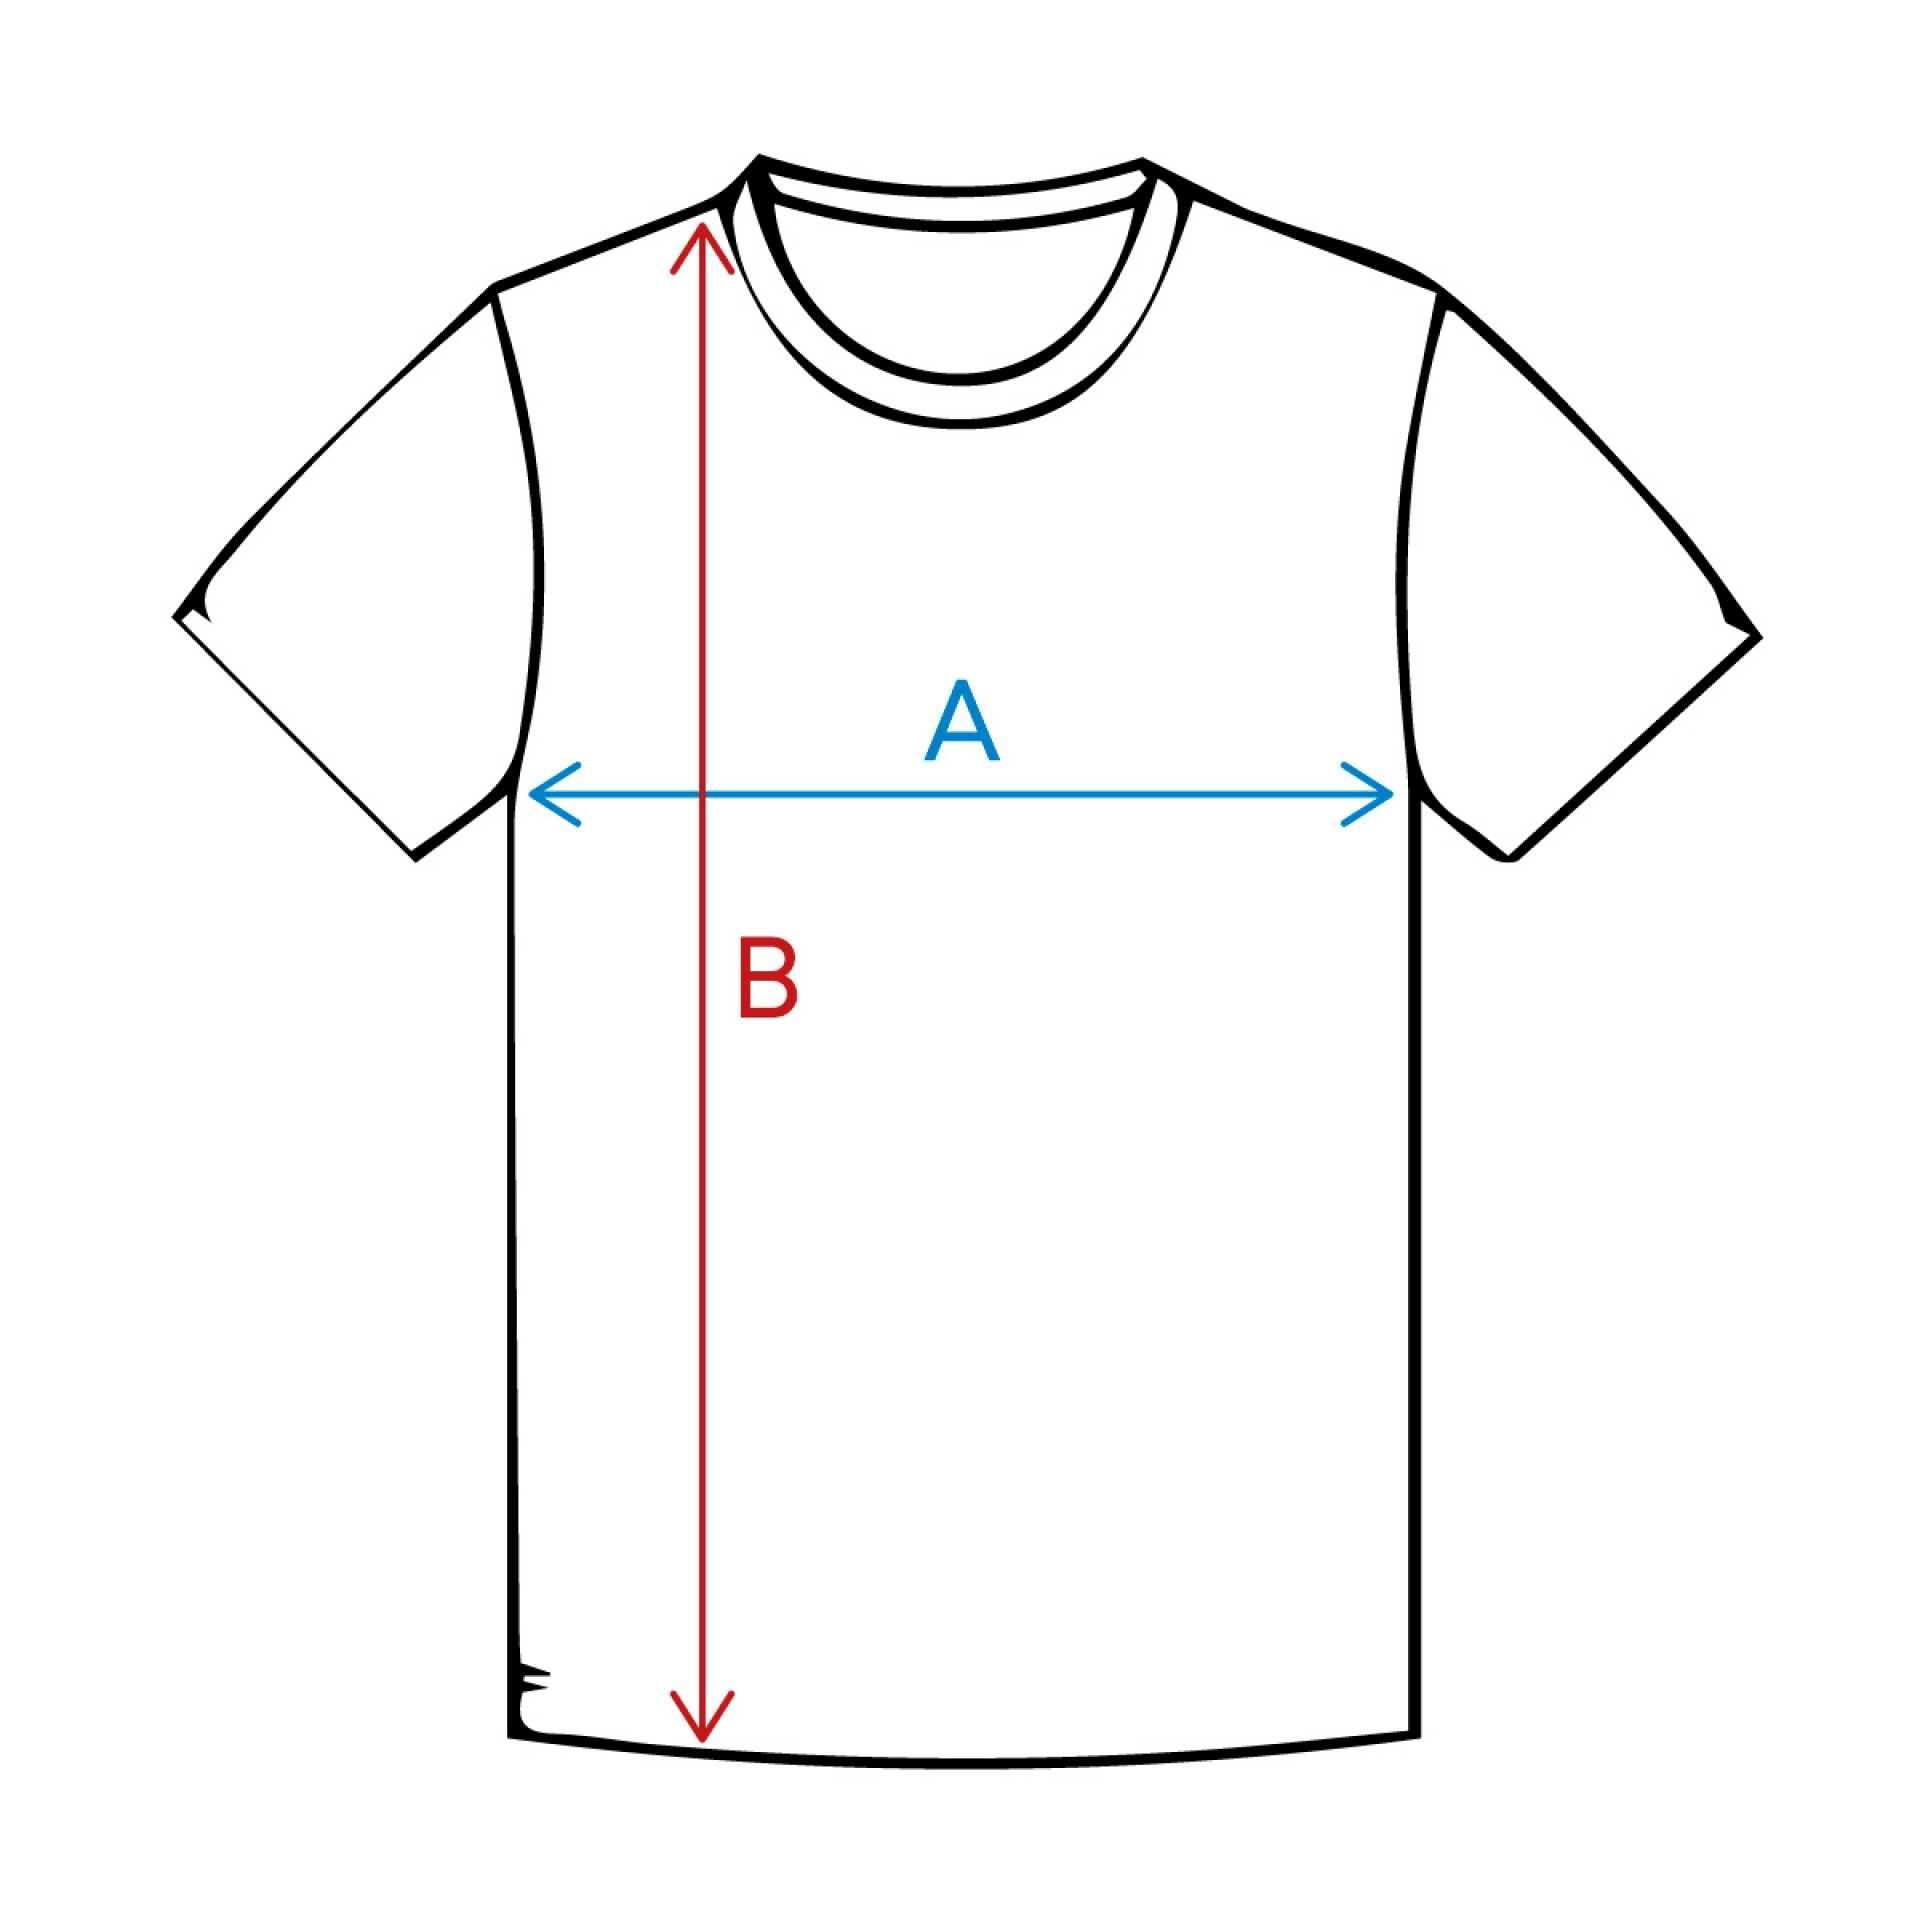 Rockworld Carping Style Melange Khaki  - Camiseta para hombre